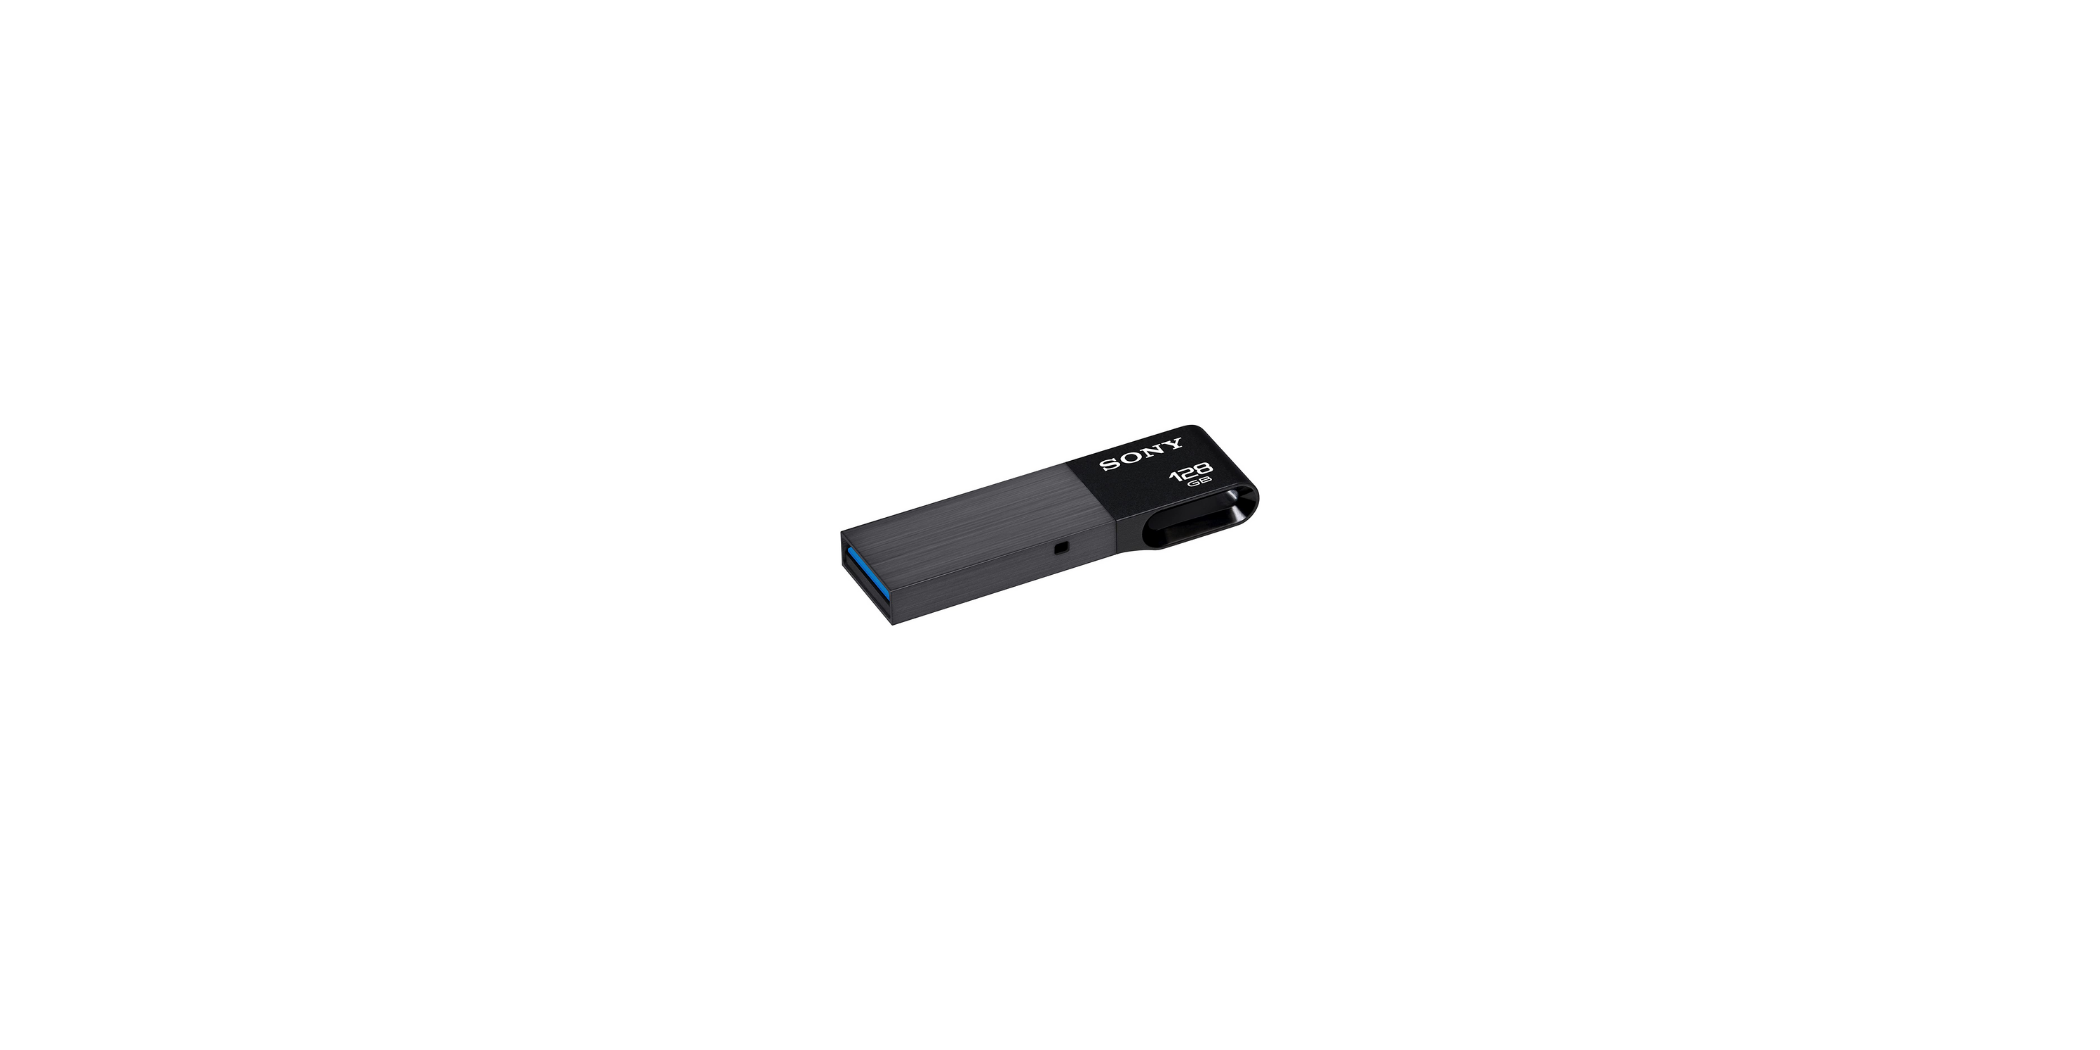 Sony USM128W3/B USB 128GB Black